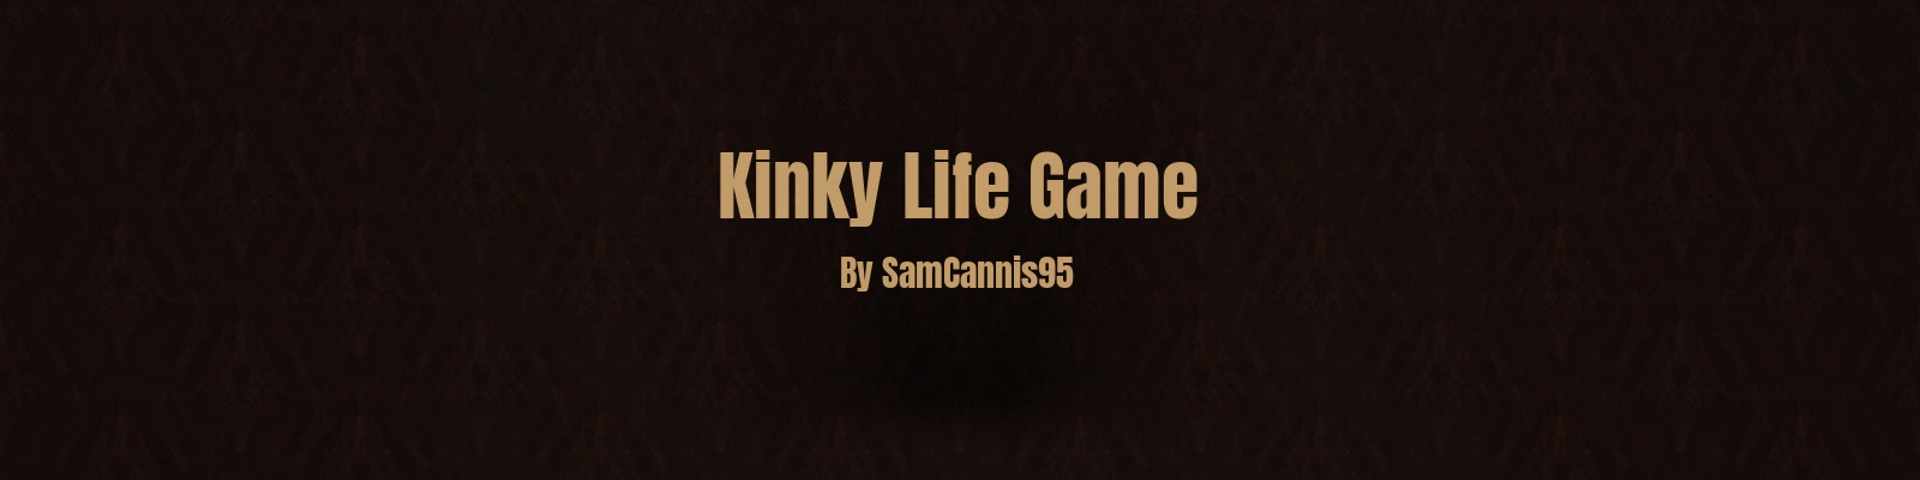 Kinky Life Game [v0.4.5 Preview] main image